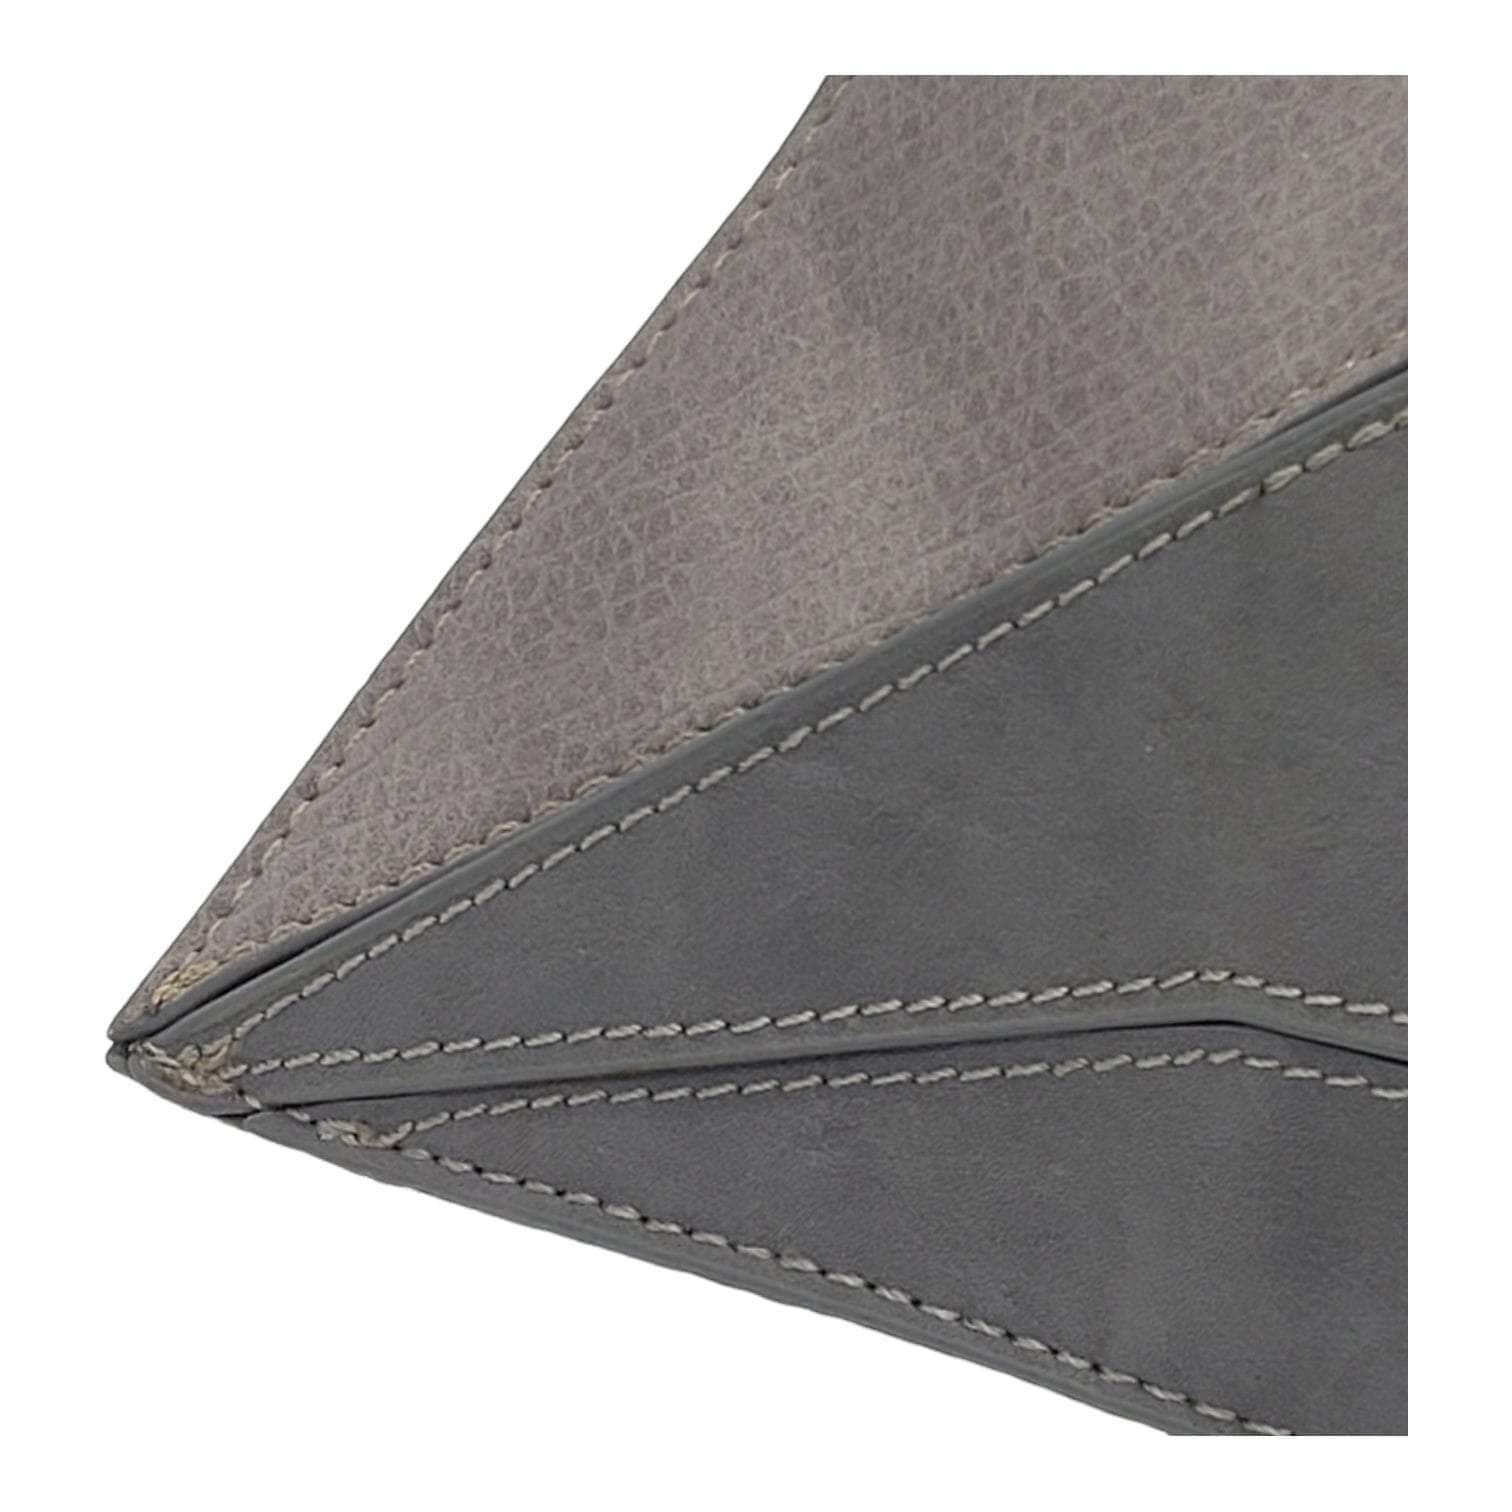 Religion Grey Asymmetric Clutch Bag